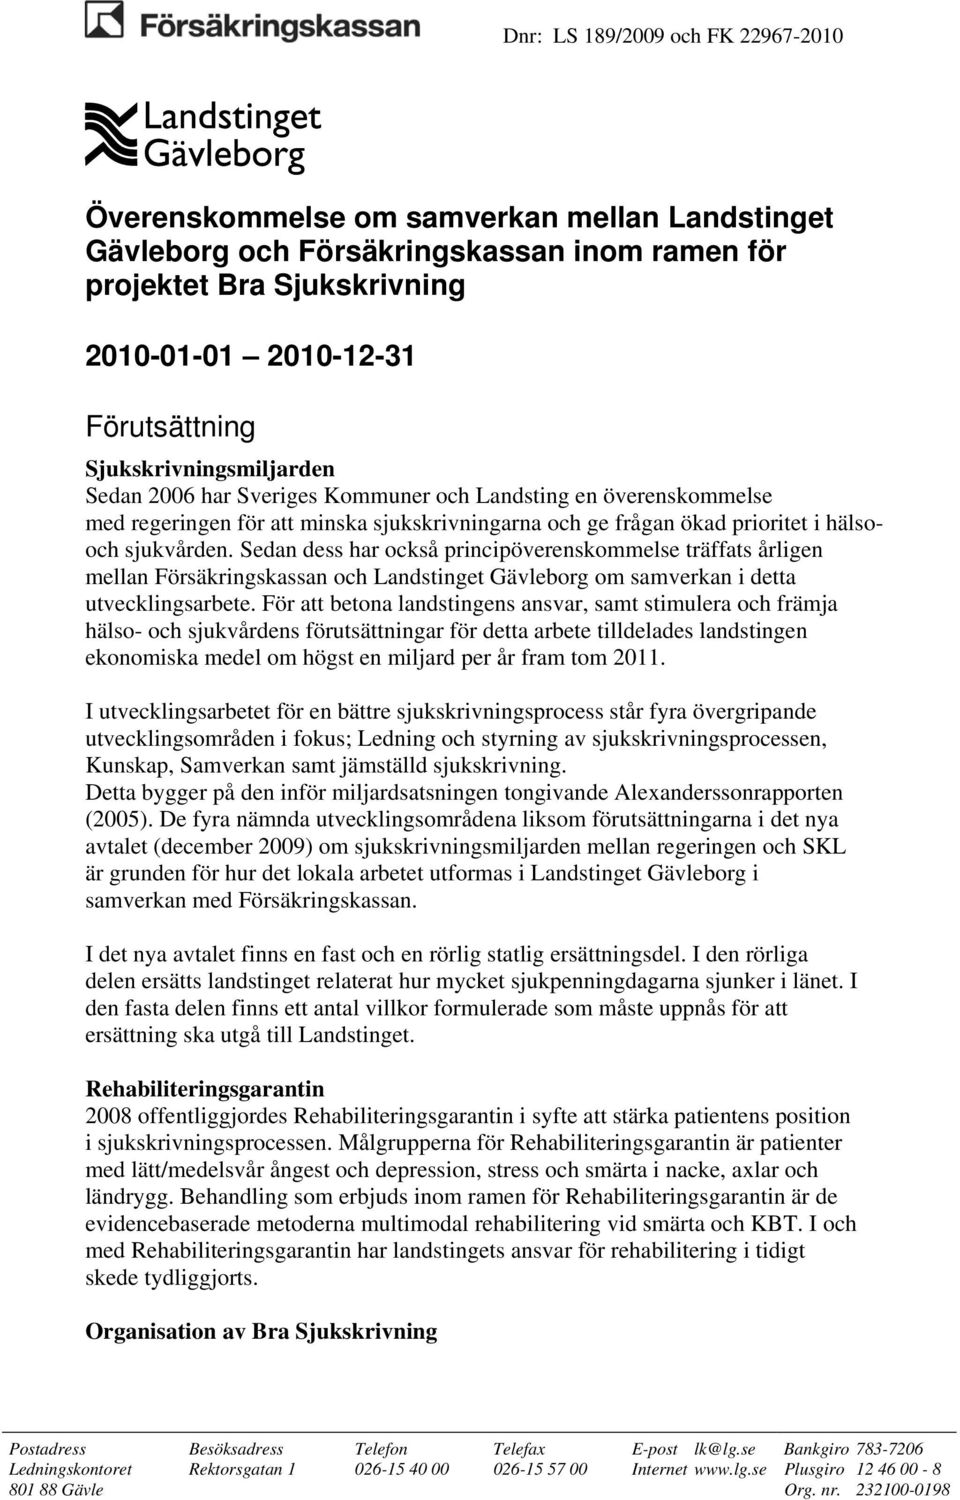 Sedan dess har också principöverenskommelse träffats årligen mellan Försäkringskassan och Landstinget Gävleborg om samverkan i detta utvecklingsarbete.